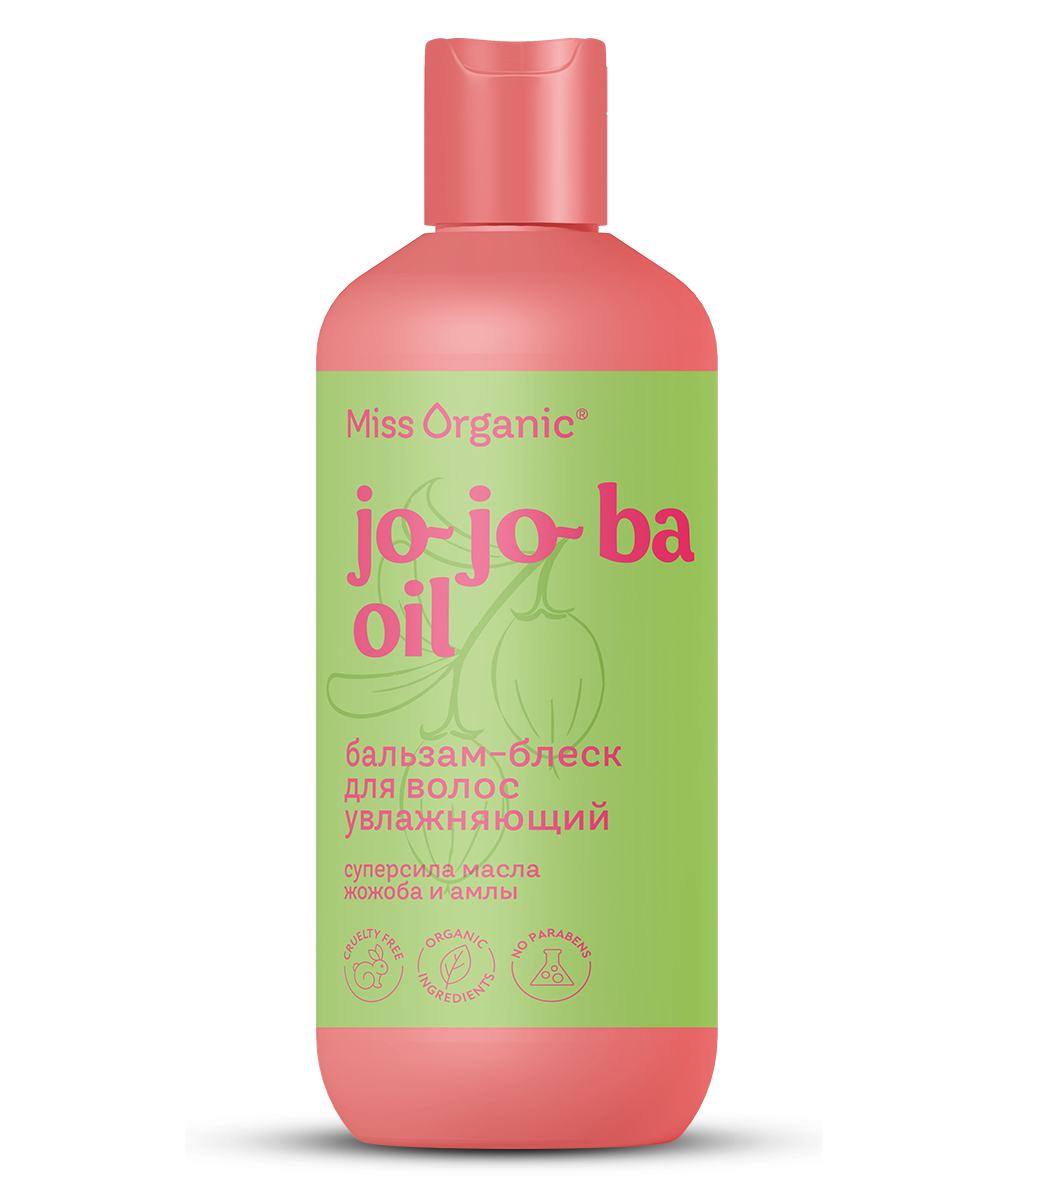 Бальзам для волос Miss Organic JO-JO-BA OIL блеск и увлажнение 290мл - в интернет-магазине tut-beauty.by